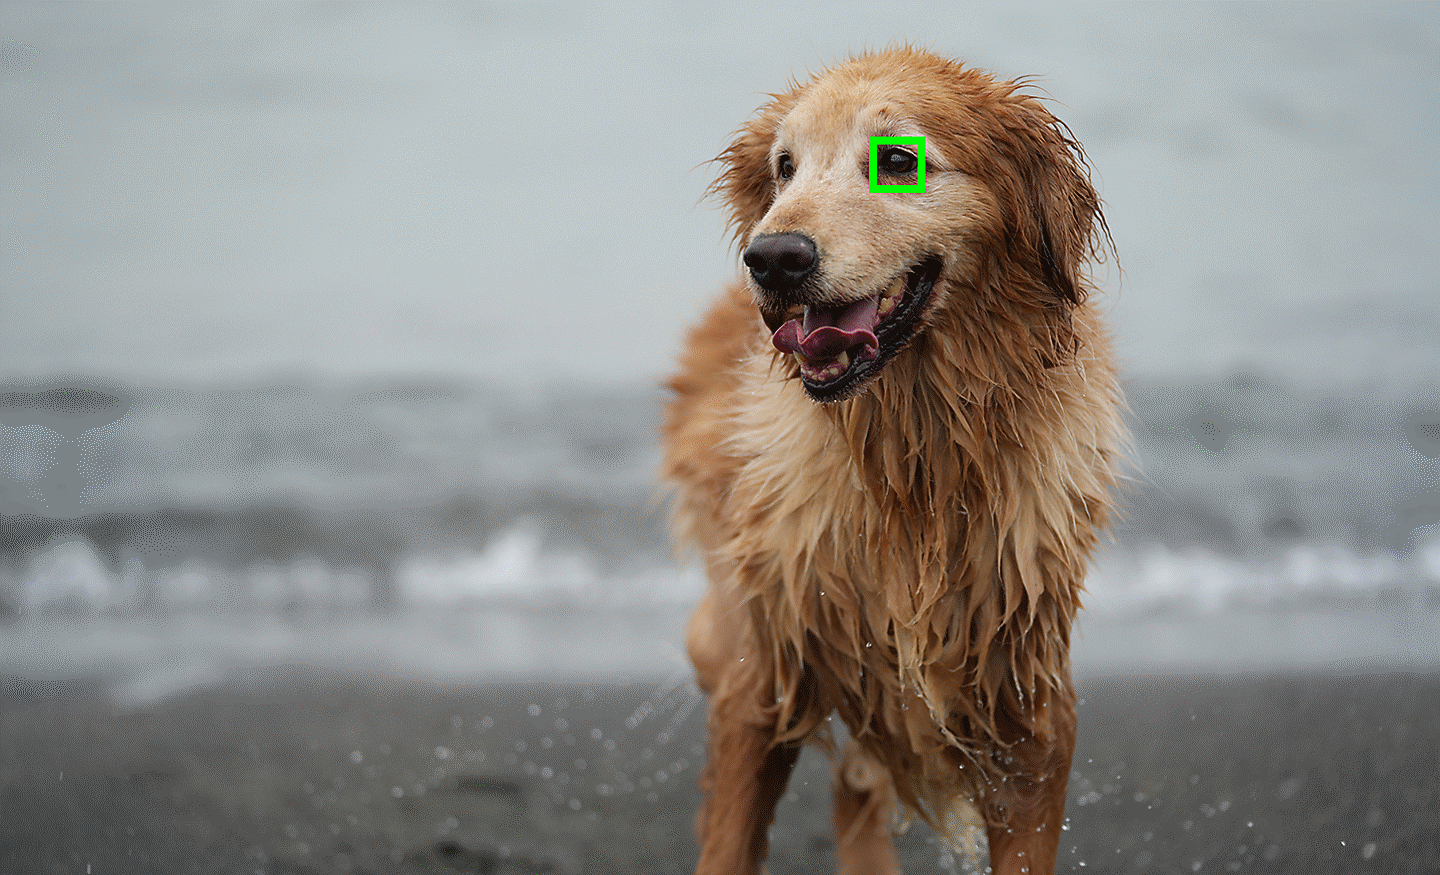 示意相片，示範動物眼部追蹤對焦功能，且焦點鎖定在主體小狗的眼部